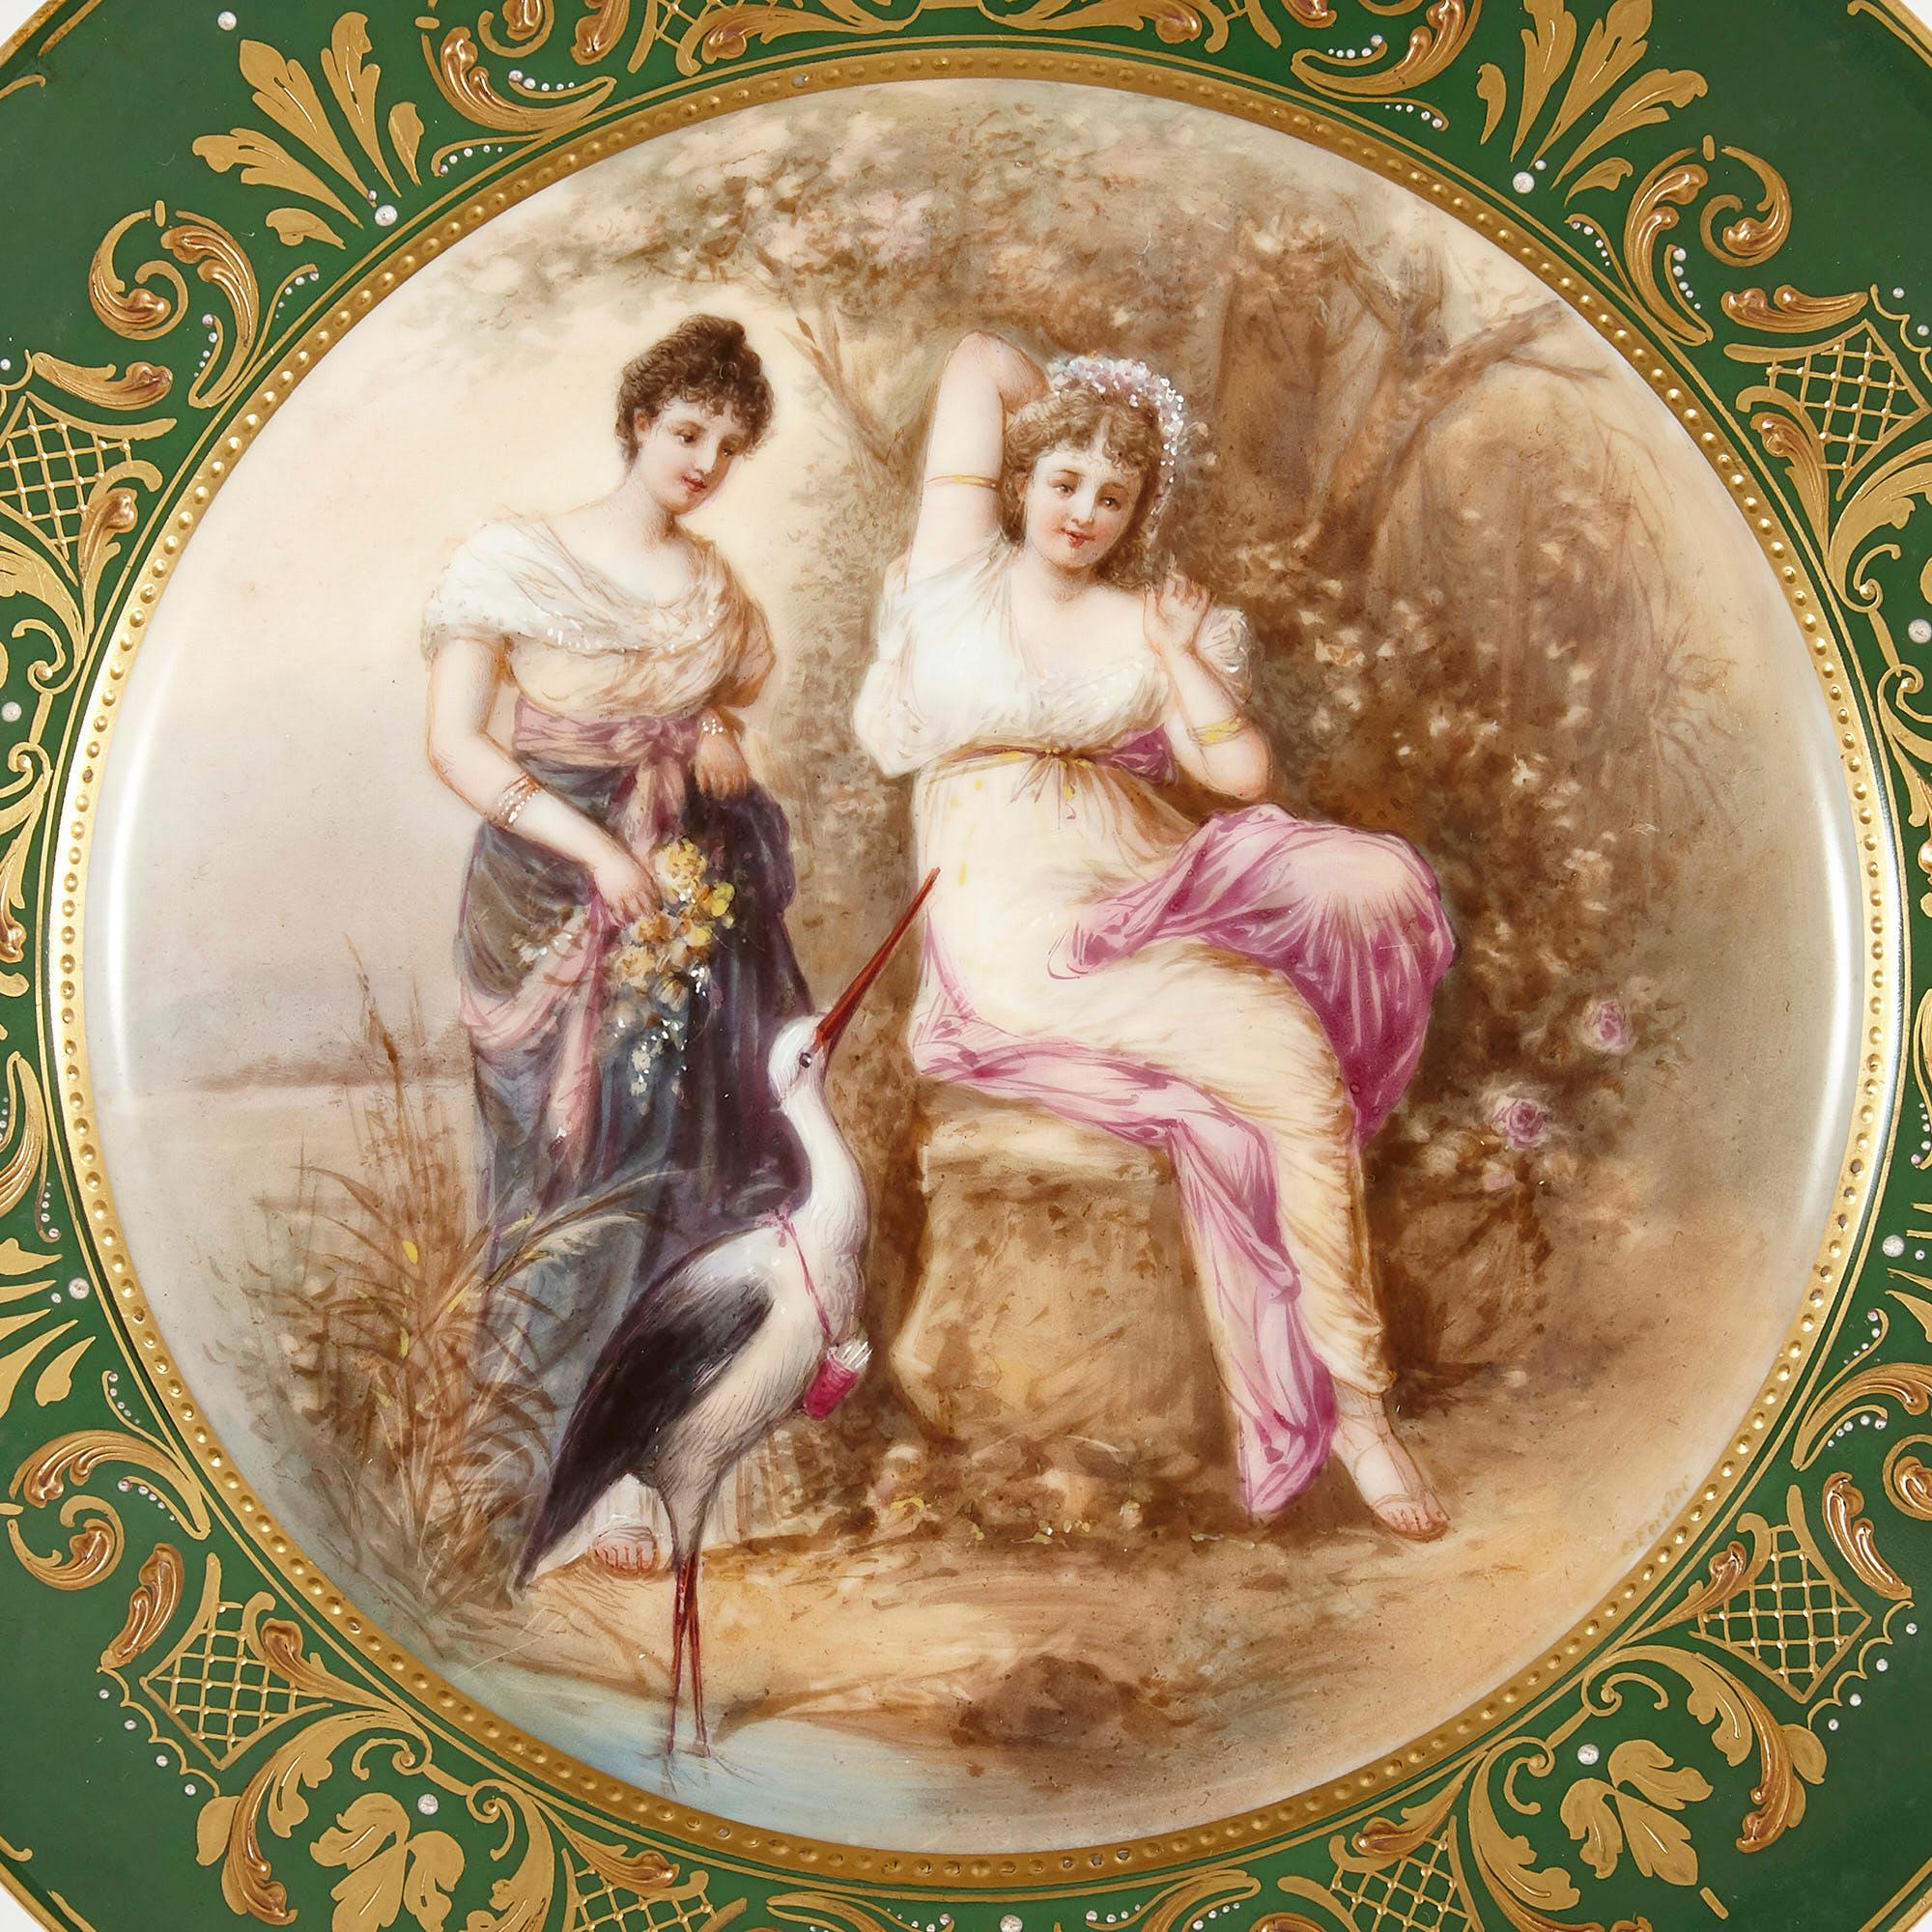 Ancienne assiette en porcelaine royale de Vienne peinte et dorée
Autrichien, fin du XIXe siècle
Dimensions : Hauteur 2,5 cm, diamètre 24 cm

De forme circulaire, cette fine assiette de cabinet est fabriquée en porcelaine royale de Vienne et